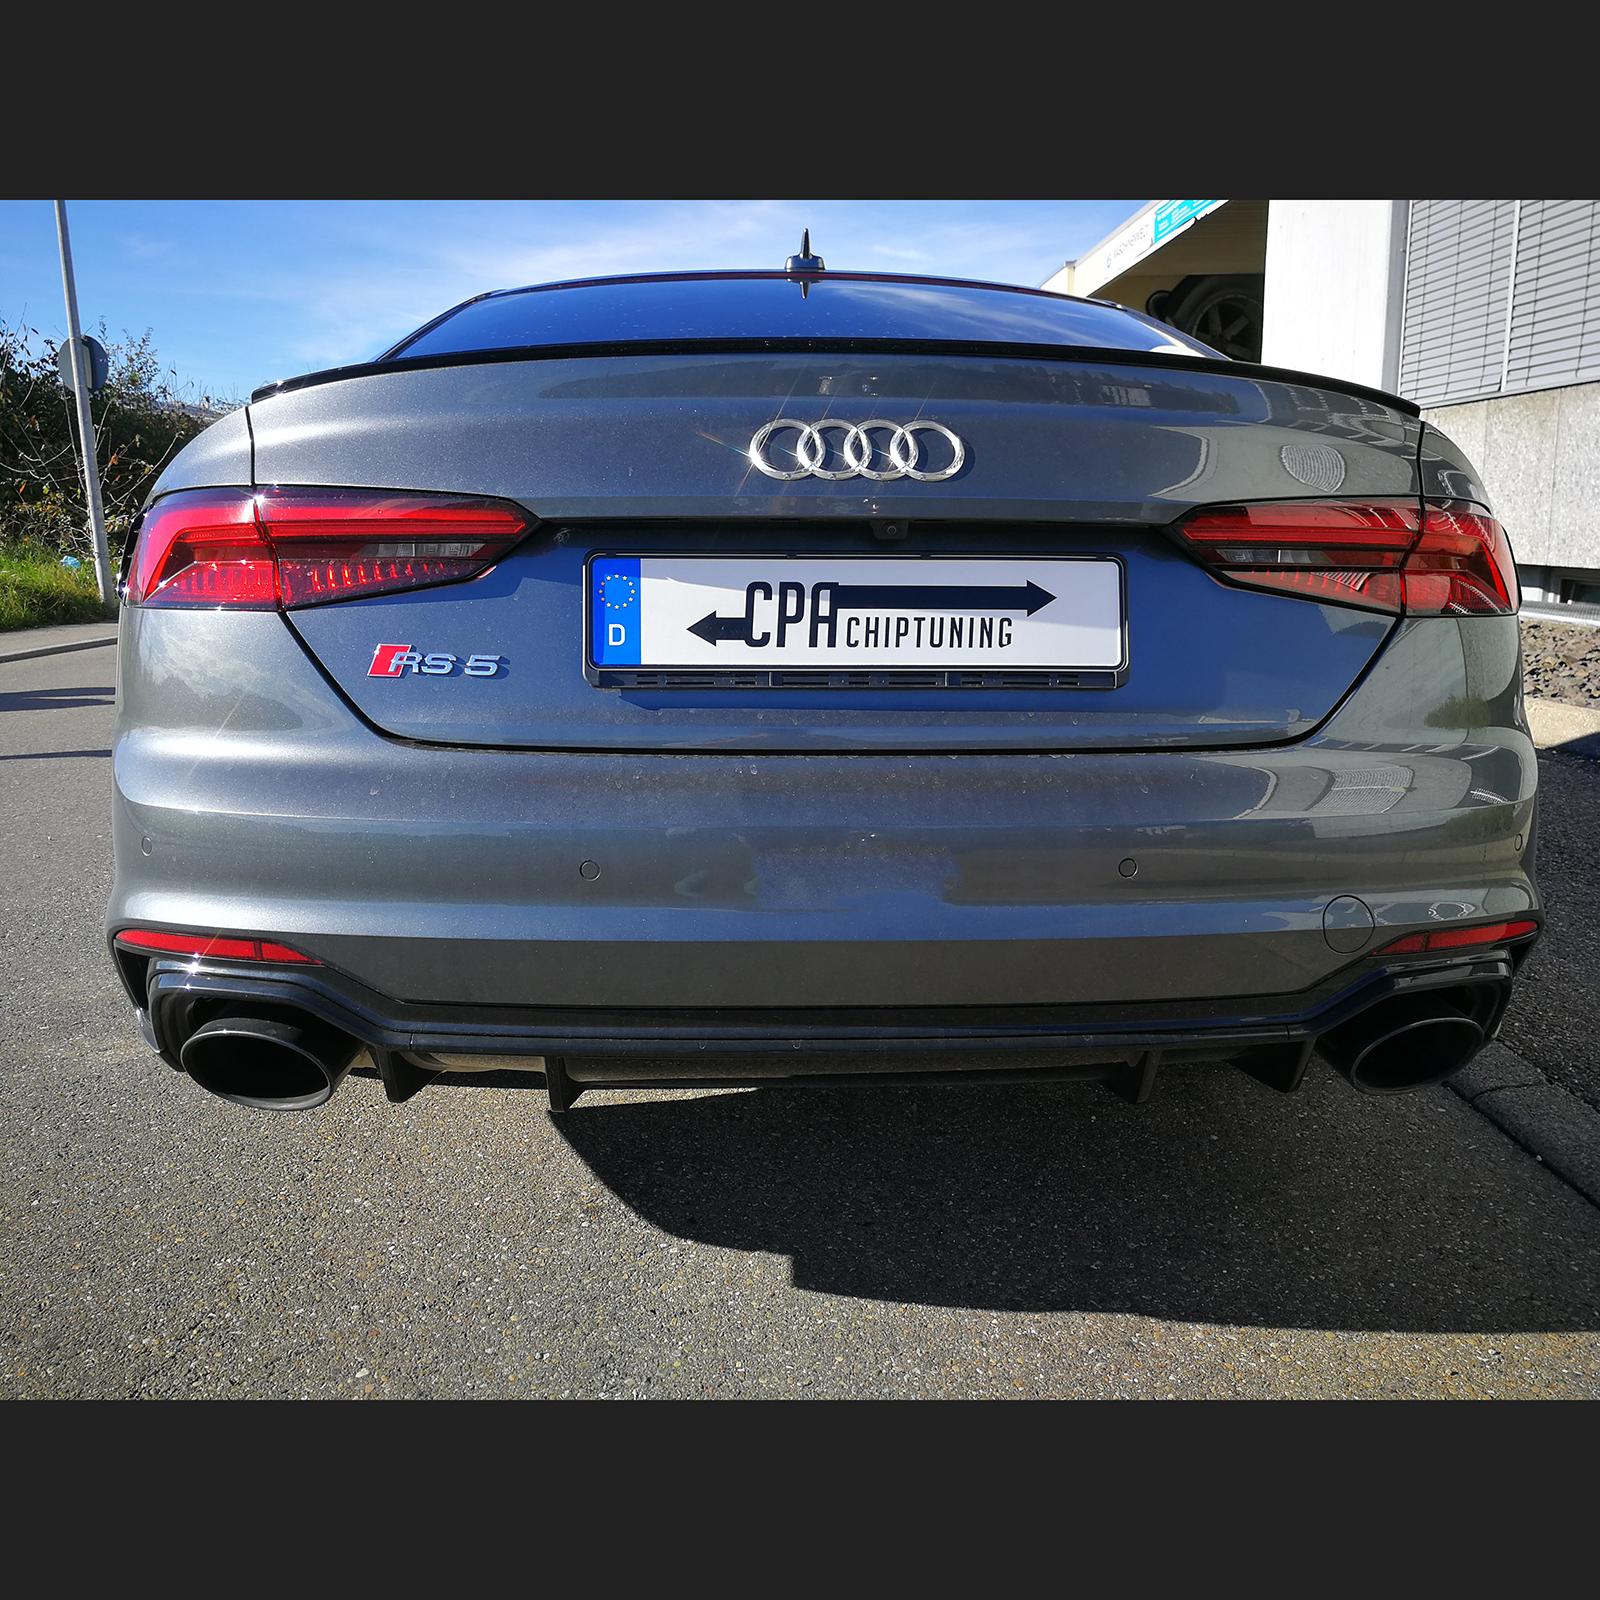 El Audi RS5 a prueba en CPA